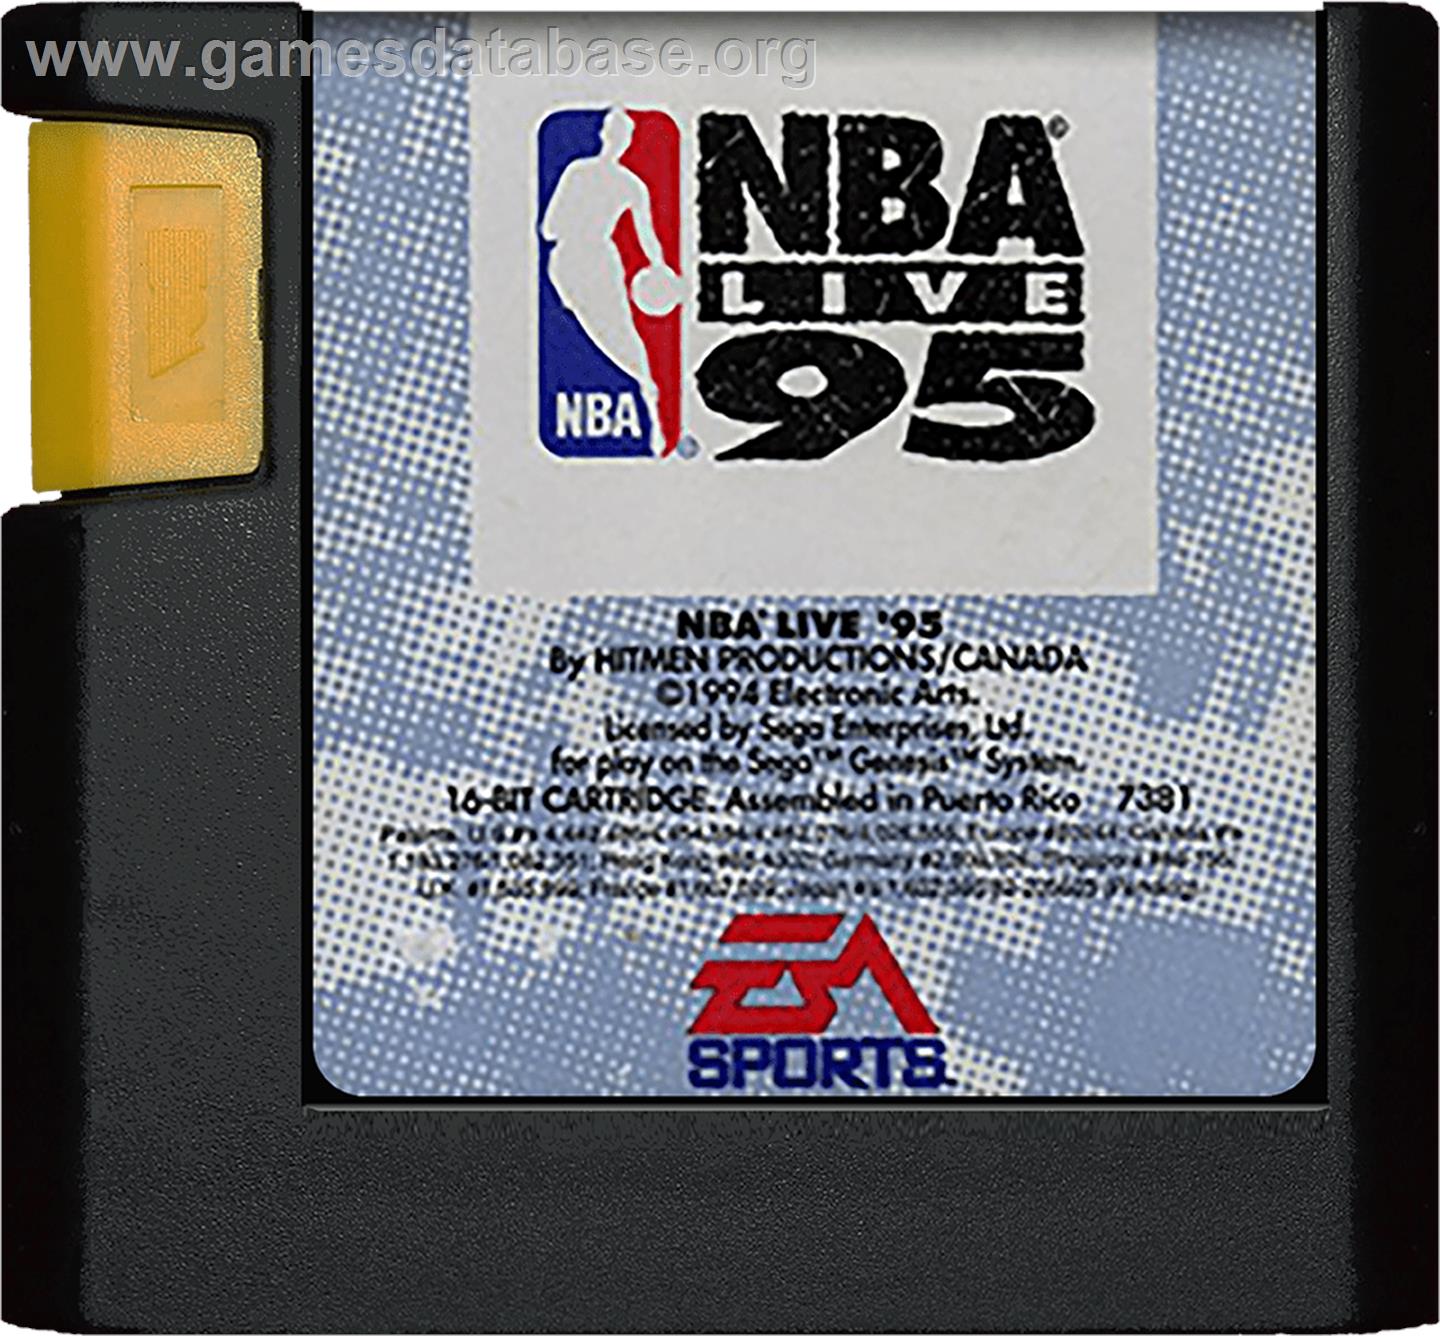 NBA Live '95 - Sega Genesis - Artwork - Cartridge